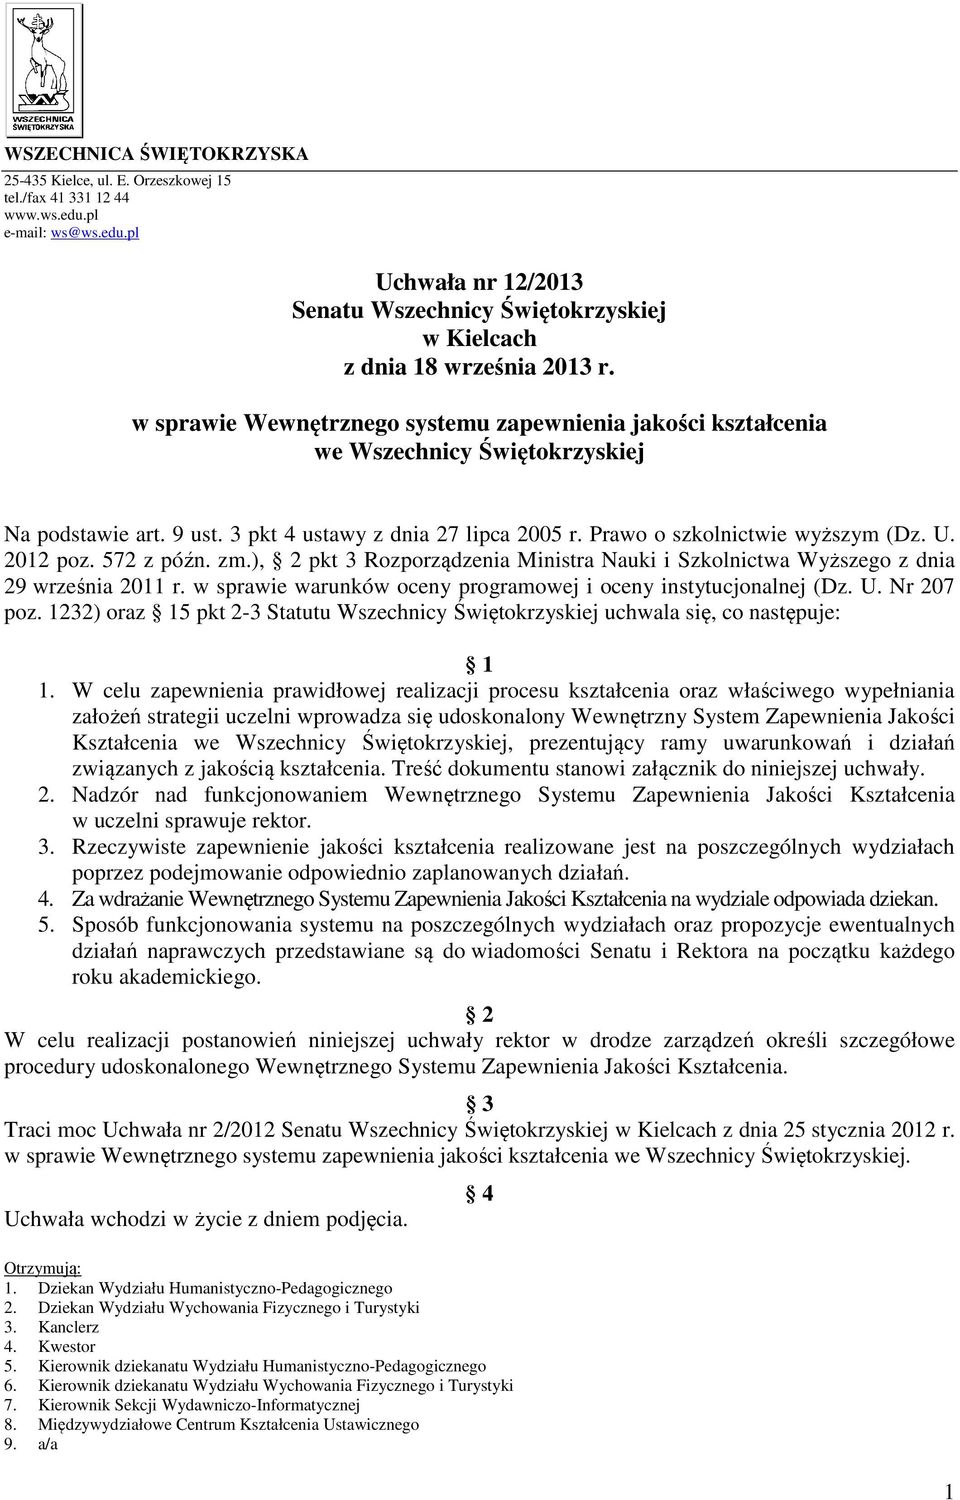 2012 poz. 572 z późn. zm.), 2 pkt 3 Rozporządzenia Ministra Nauki i Szkolnictwa Wyższego z dnia 29 września 2011 r. w sprawie warunków oceny programowej i oceny instytucjonalnej (Dz. U. Nr 207 poz.